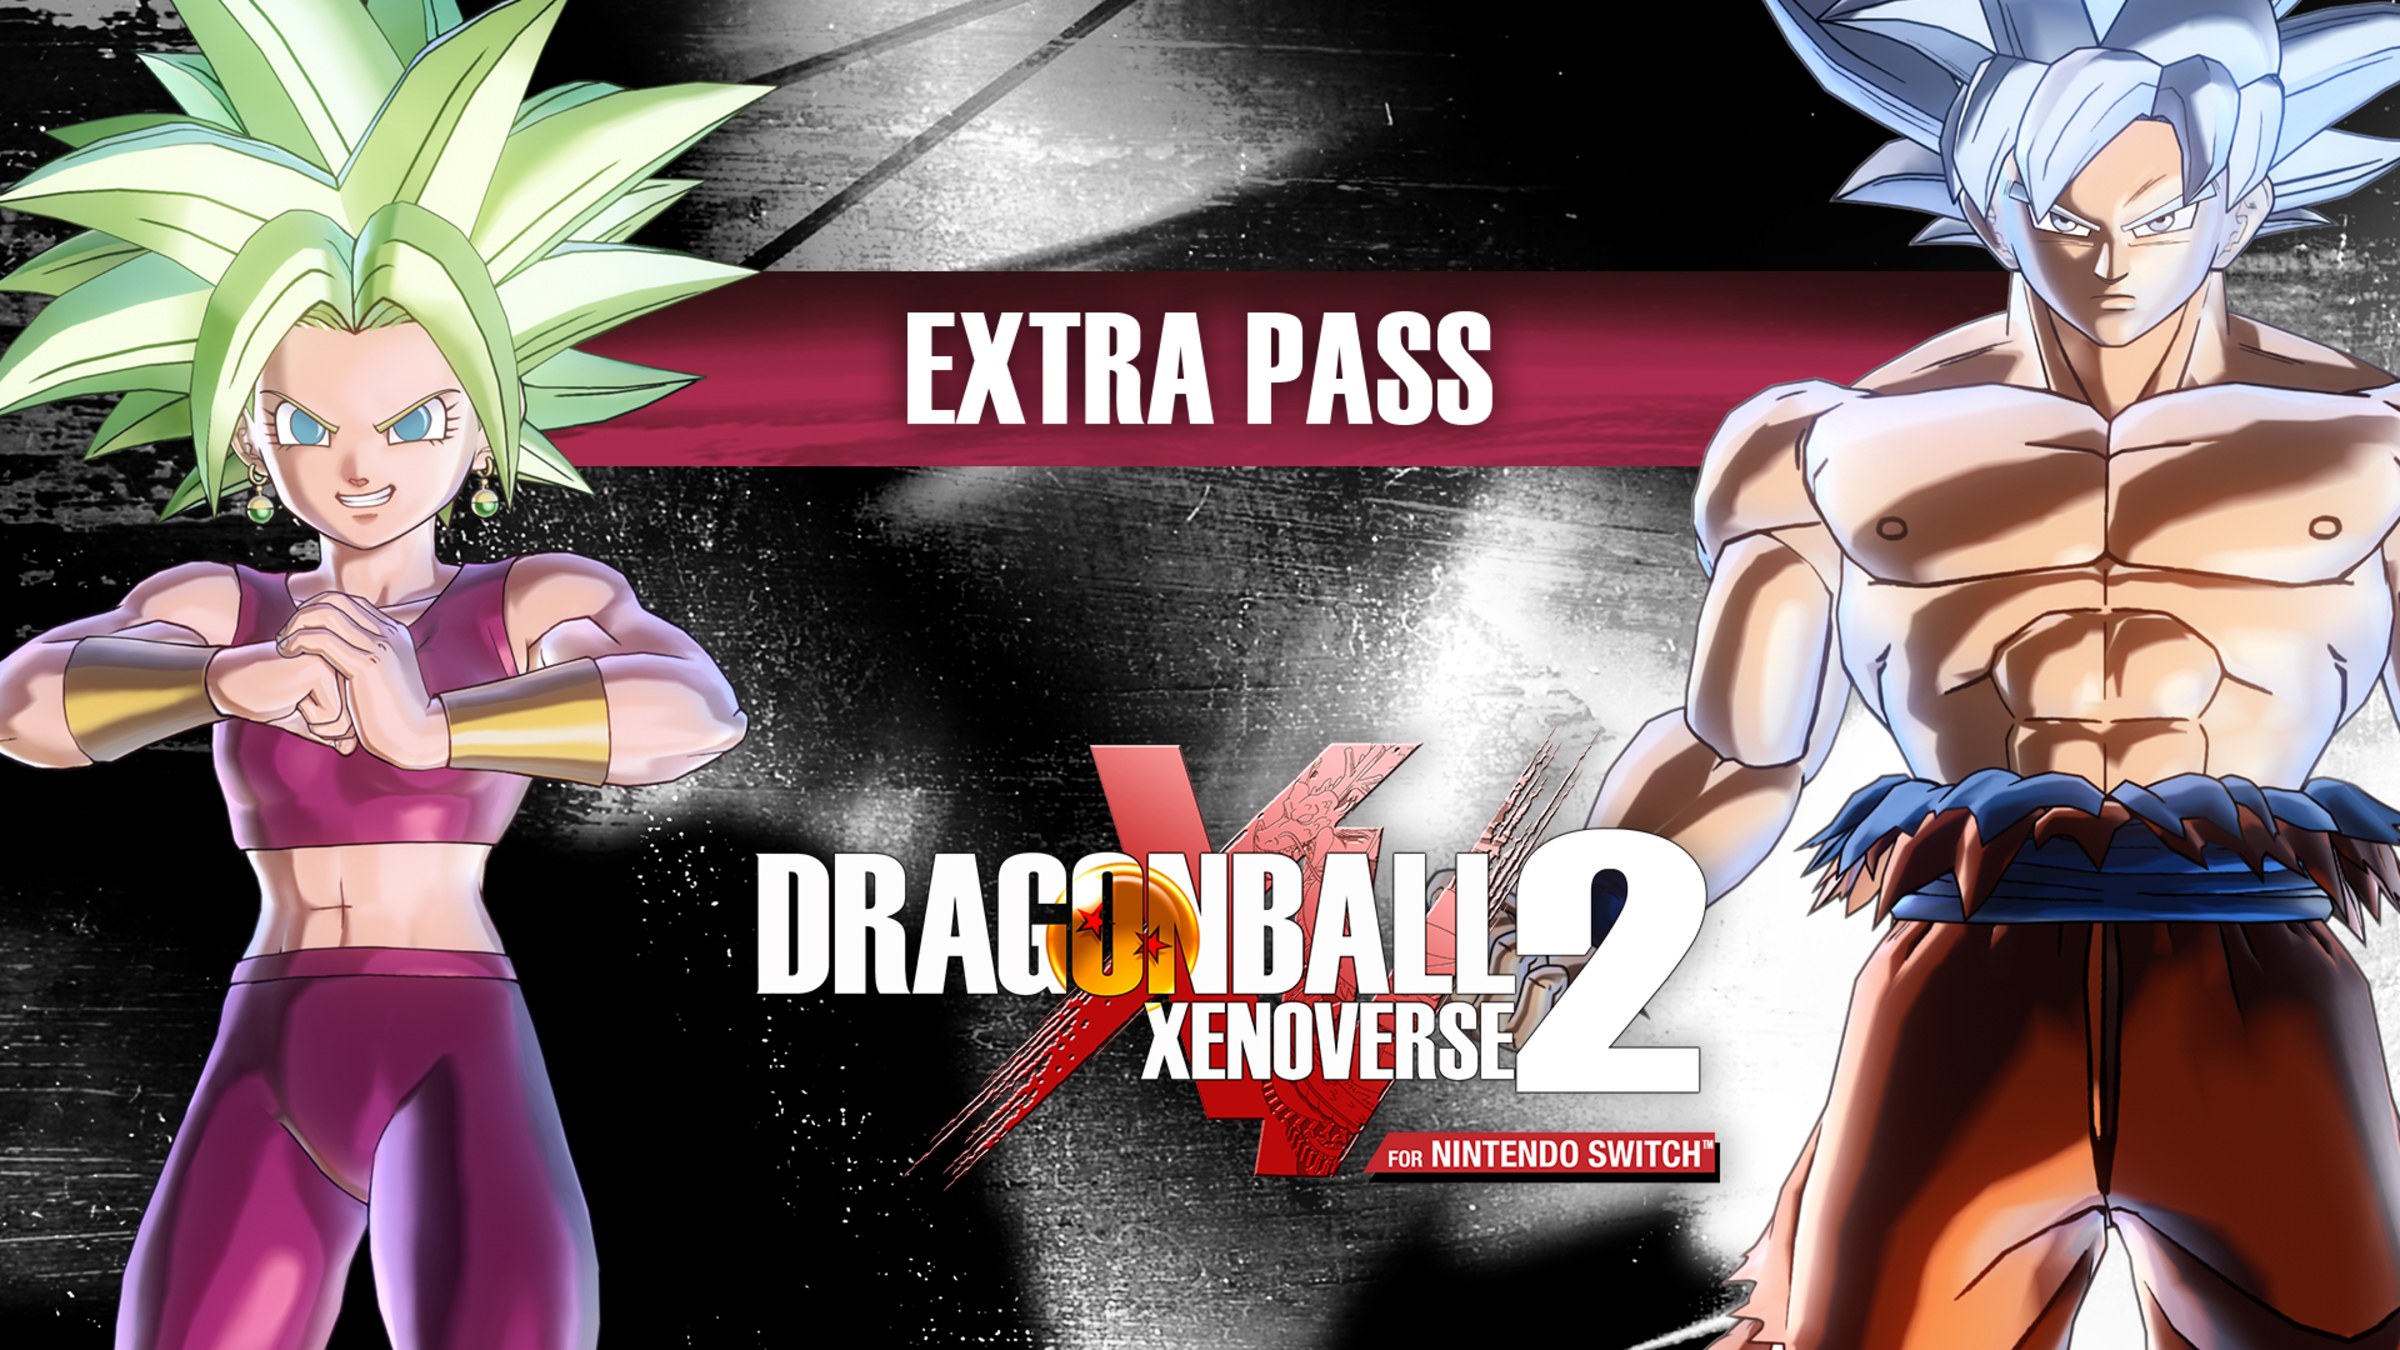 DRAGON BALL XENOVERSE 2 for Nintendo Switch